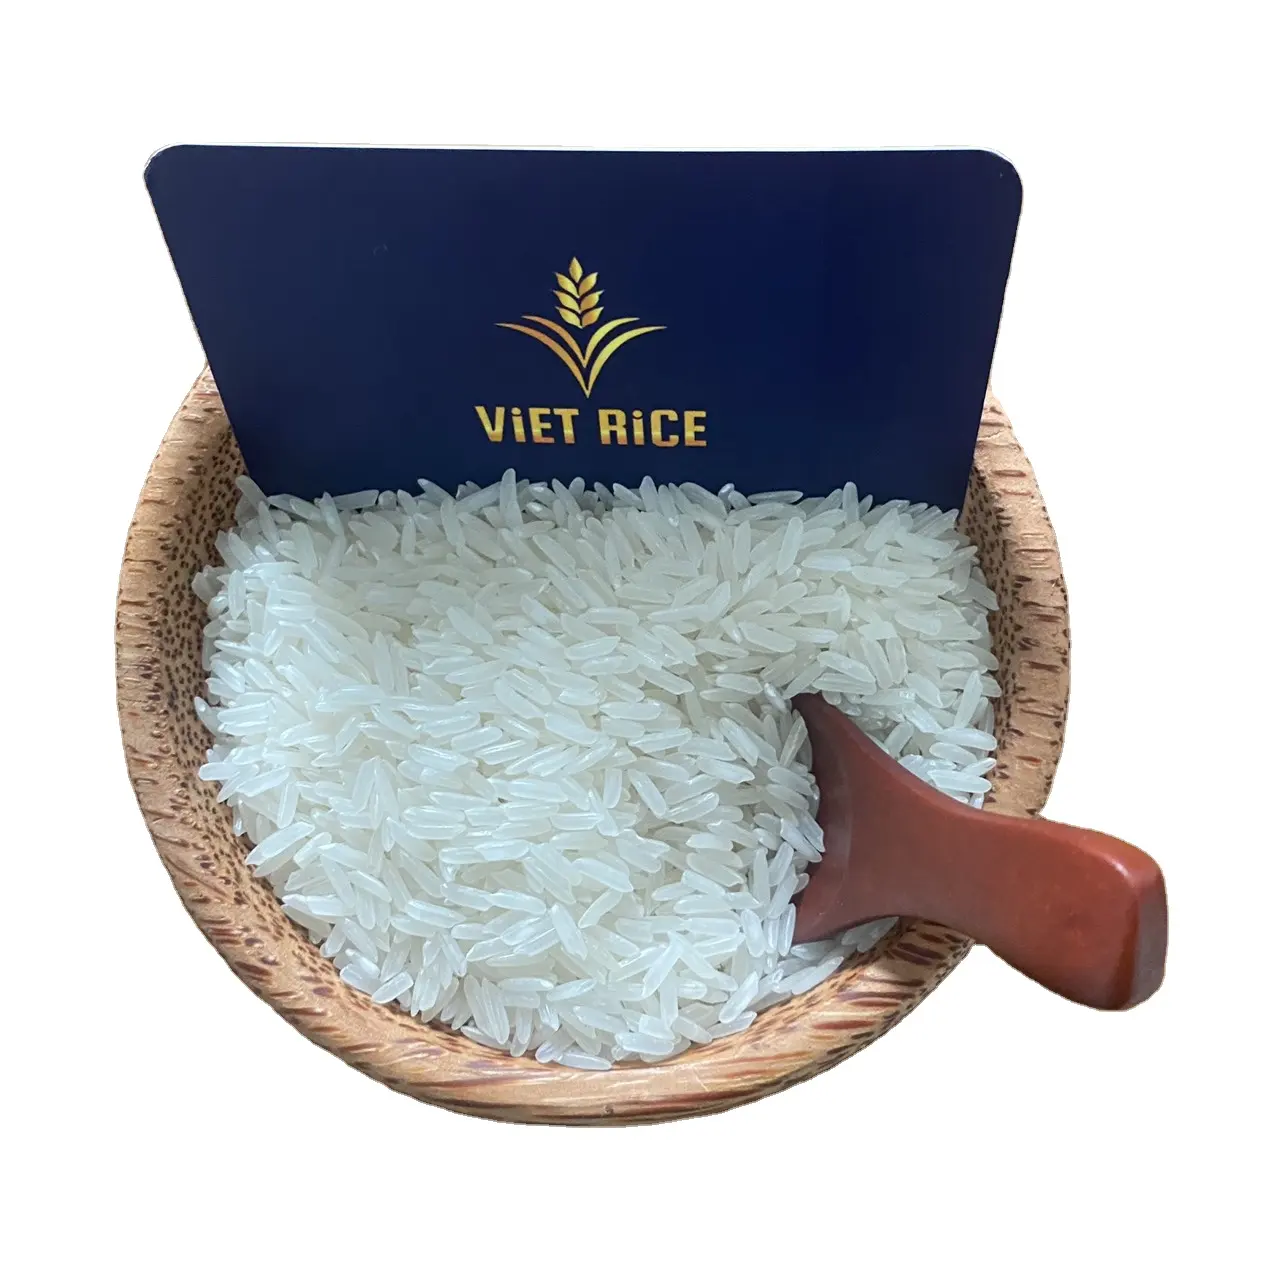 La plupart du riz exporté internationalement-riz blanc à grain long KDM-répond aux normes d'exportation mondiales, de haute qualité, prix compétitif